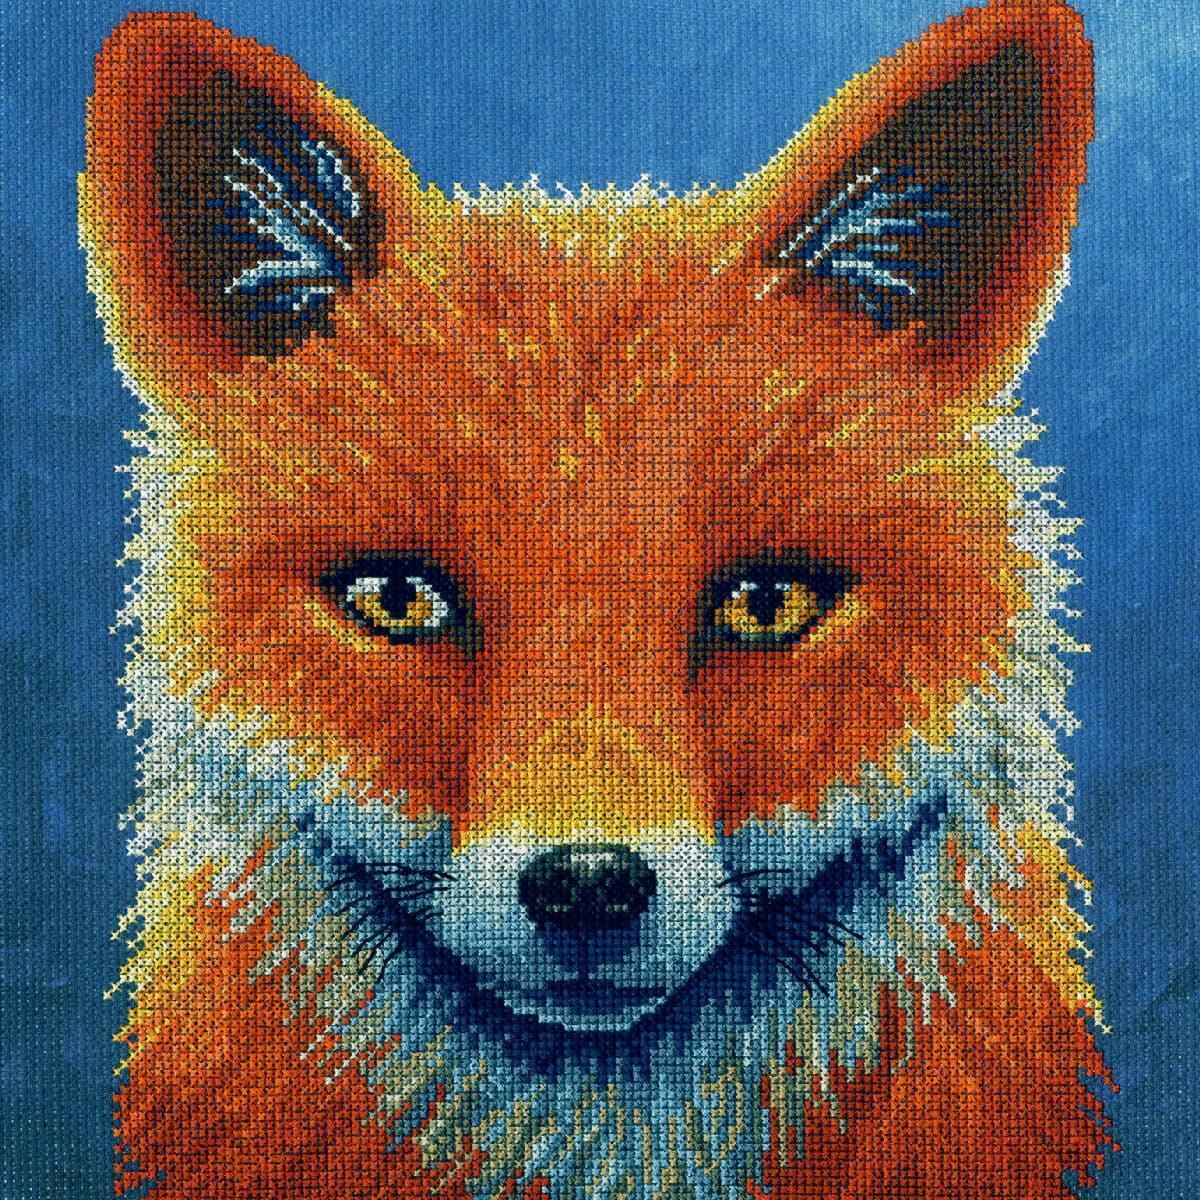 Детальный портрет лисы на голубом фоне от Bothy Threads....